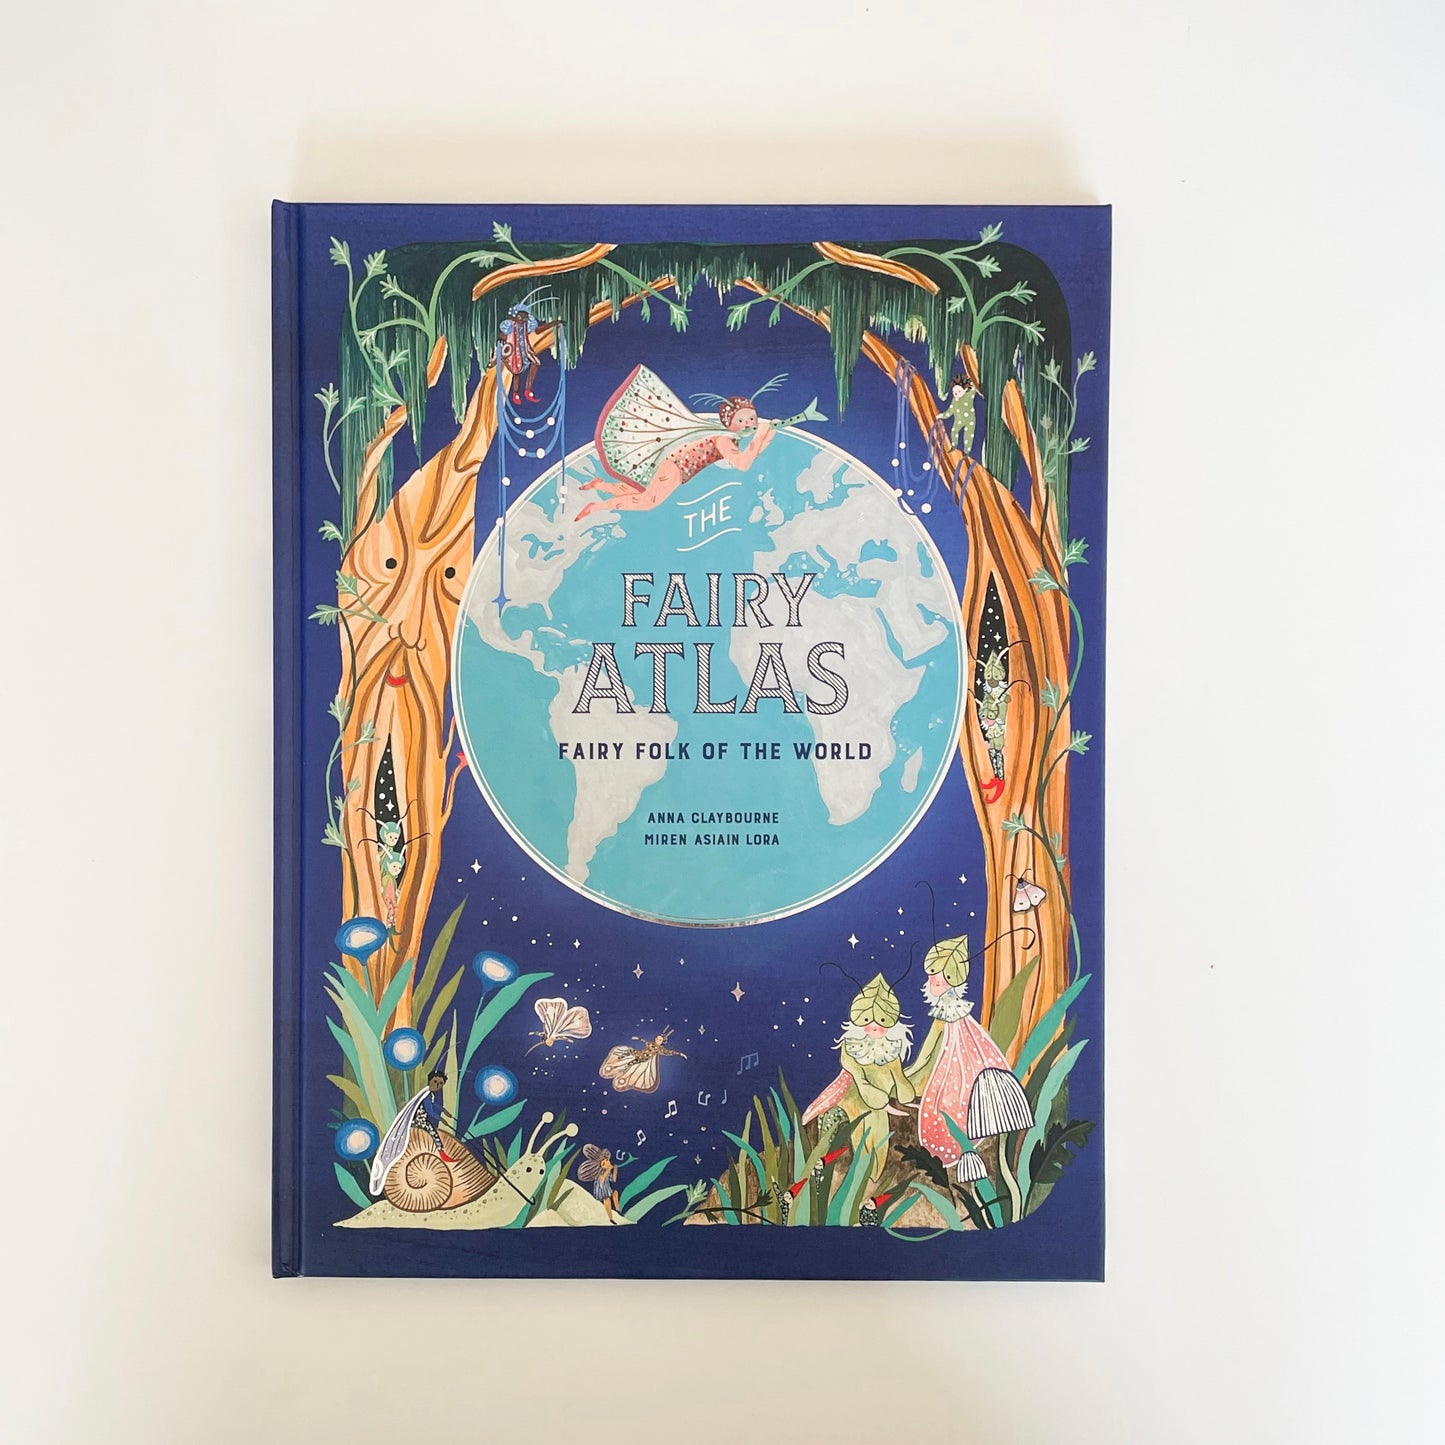 The Fairy Atlas - Fairy Folk of the World